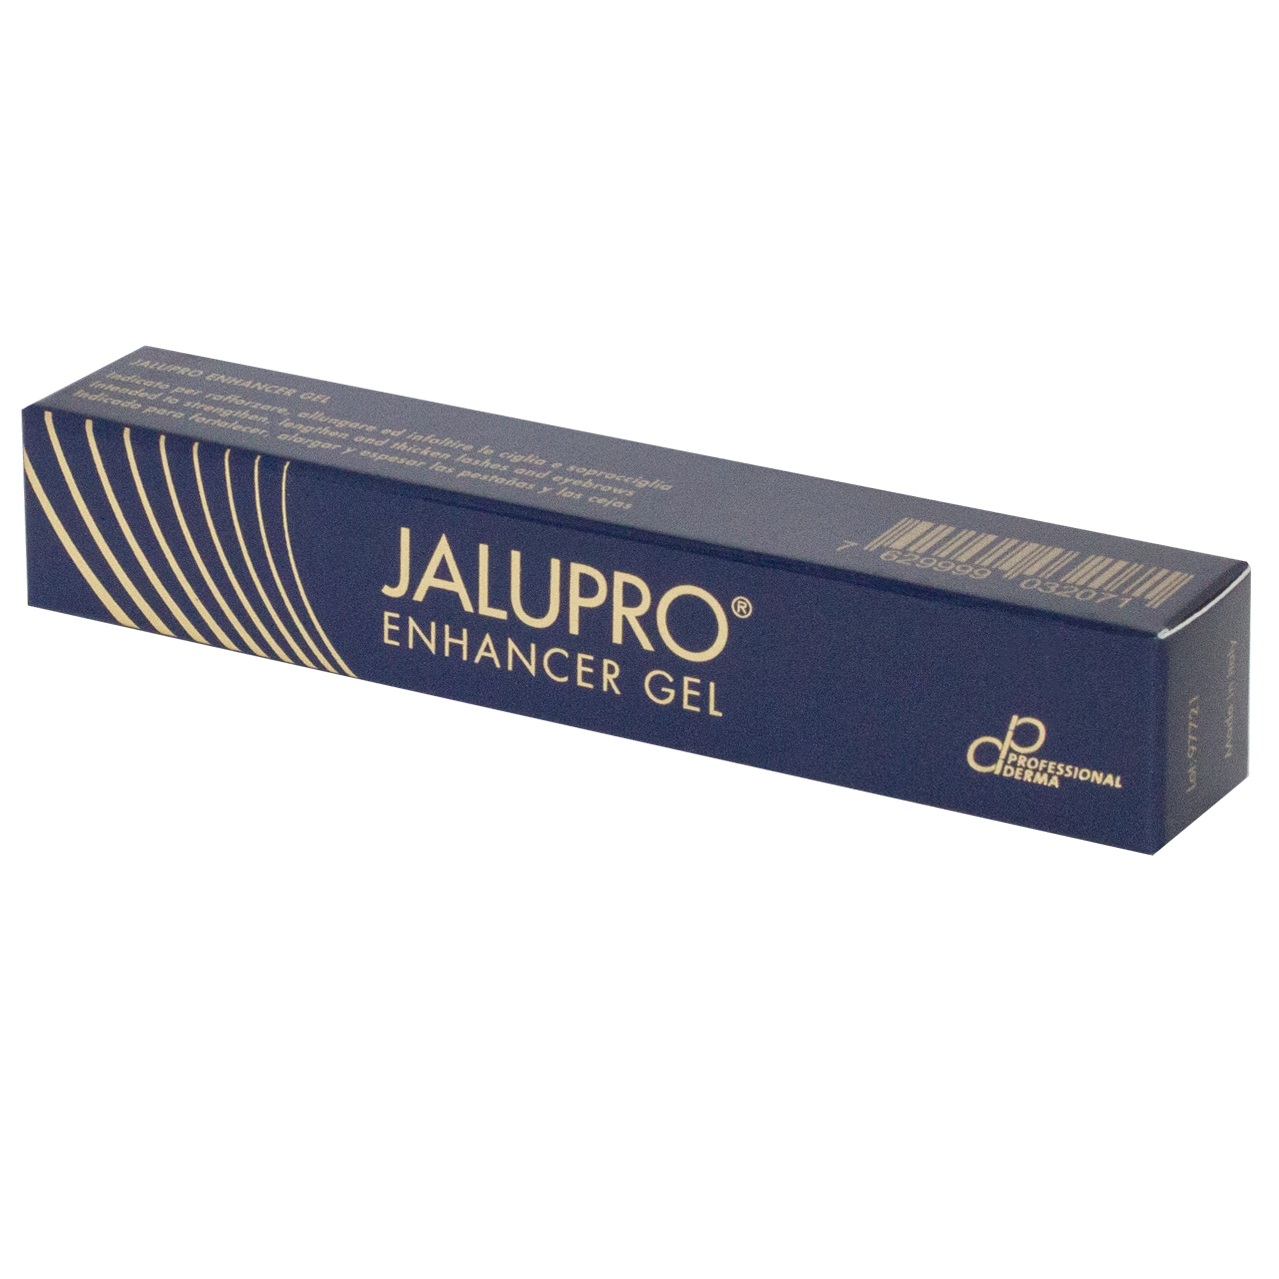 Jalupro Enhancer Gel side